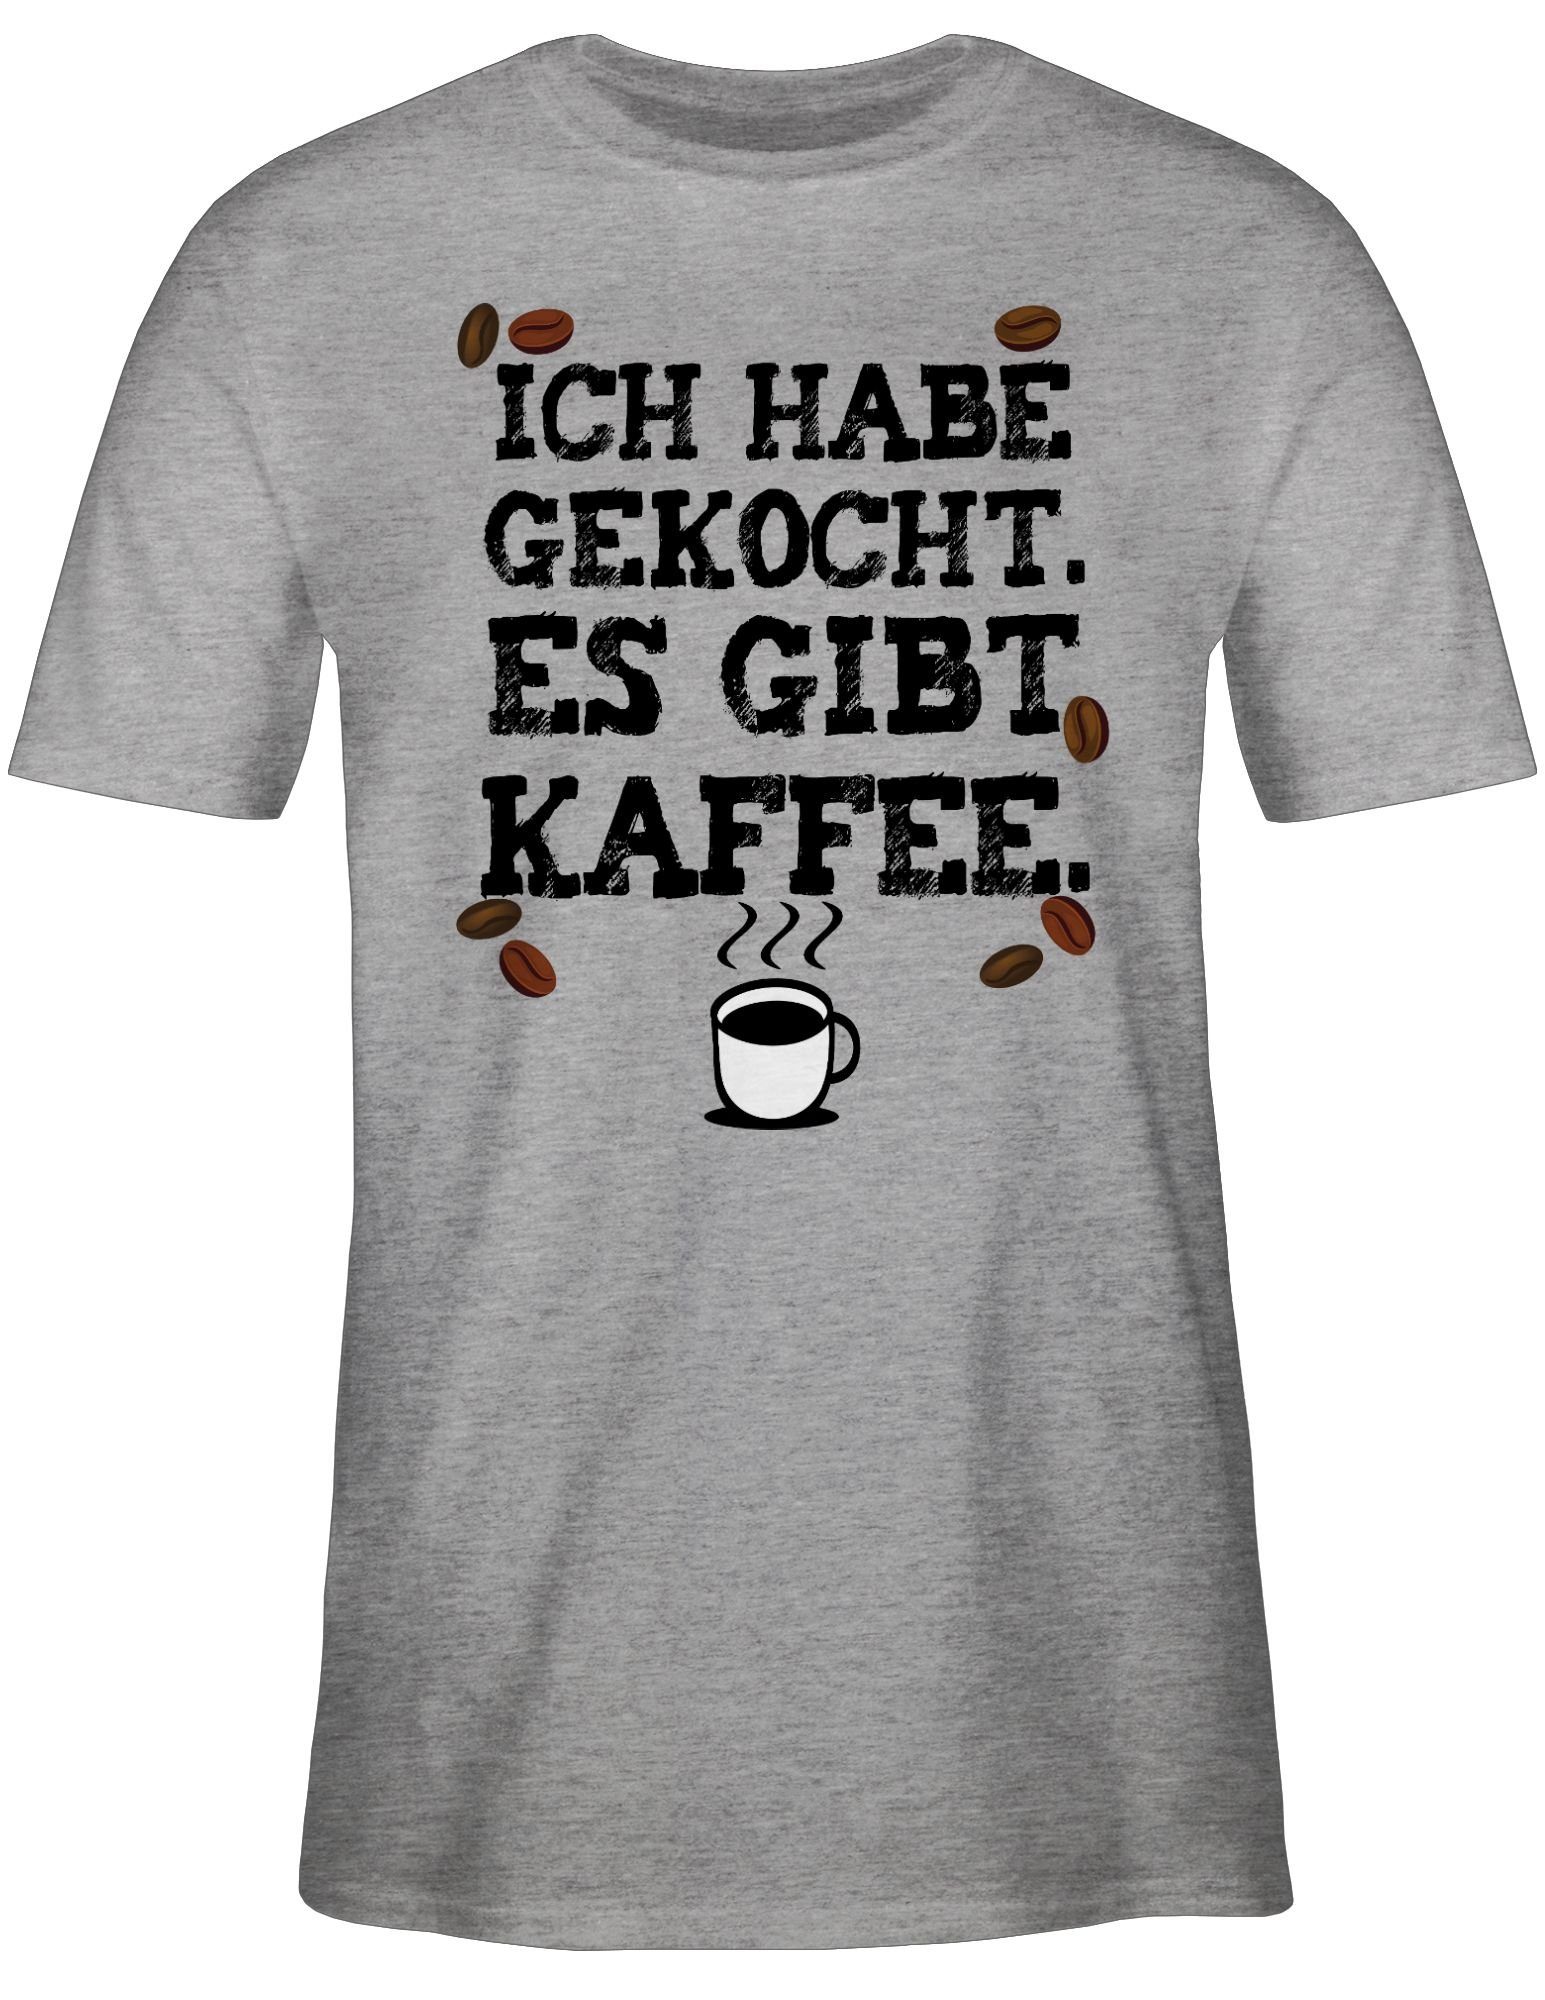 Shirtracer T-Shirt Küche Grau gibt 02 Gesc Es Kaffeejunkies gekocht. Kaffee - Kaffeeliebhaber meliert habe Ich